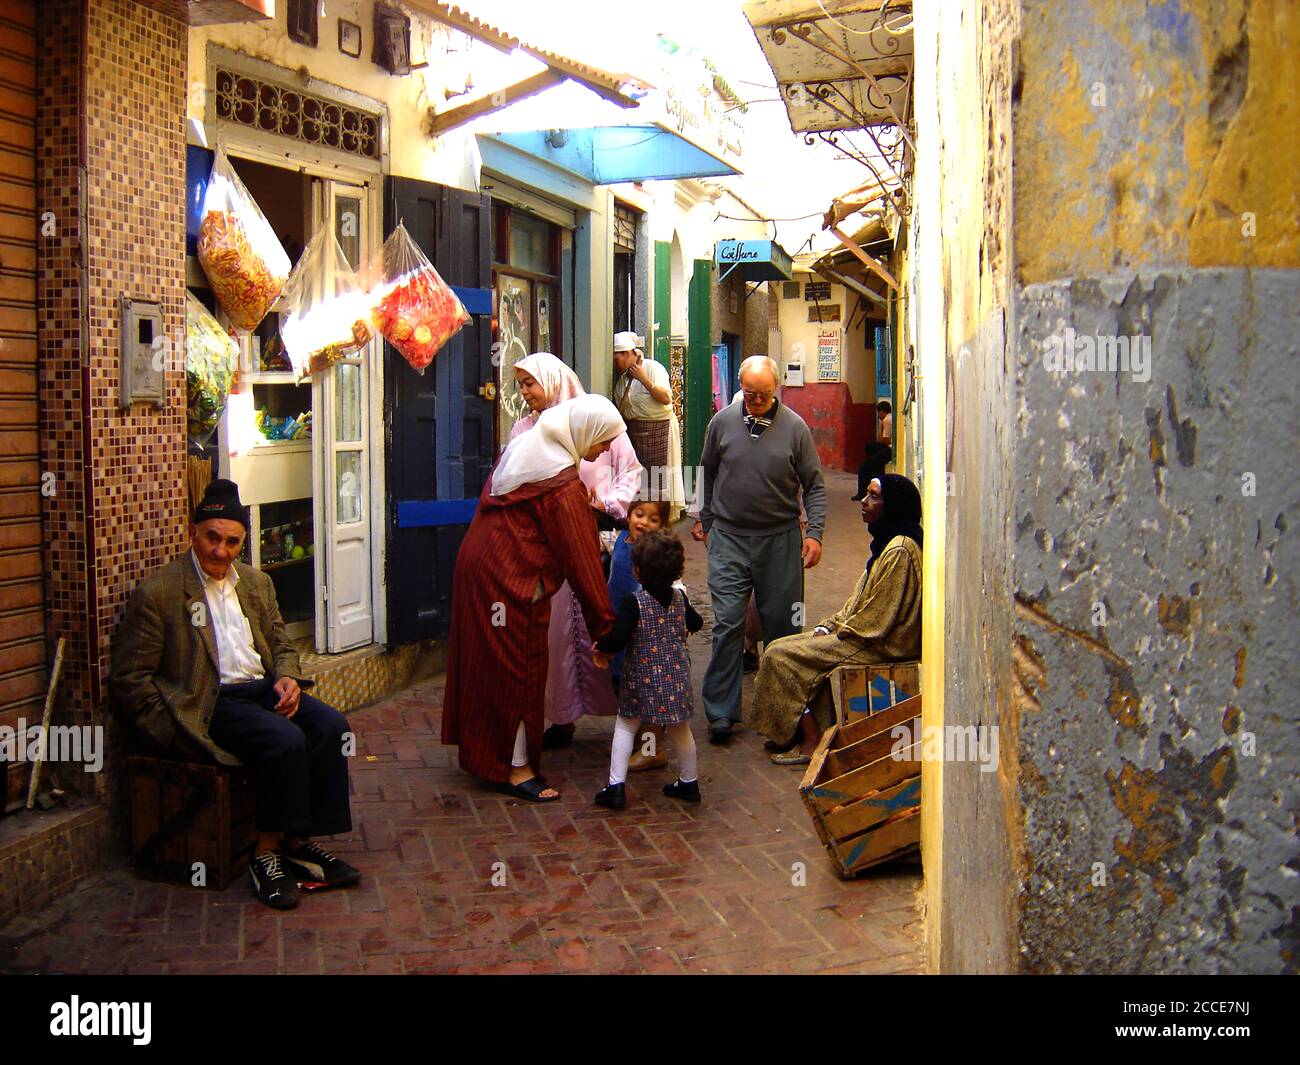 Oktober 2005 - die Medina ist ein von Mauern umschlossenes Gebiet mit einem Labyrinth aus Souks (Marktplätzen), Gassen, Geschäften und Handwerkern, die ihre Waren verkaufen. Beim Kauf geht es immer um Feilschen. Dieses Foto zeigt eine typische Straße mit kleinen Geschäften, in der Ladenbesitzer draußen sitzen und auf ihre Kunden in Tanger, Marokko, warten Stockfoto